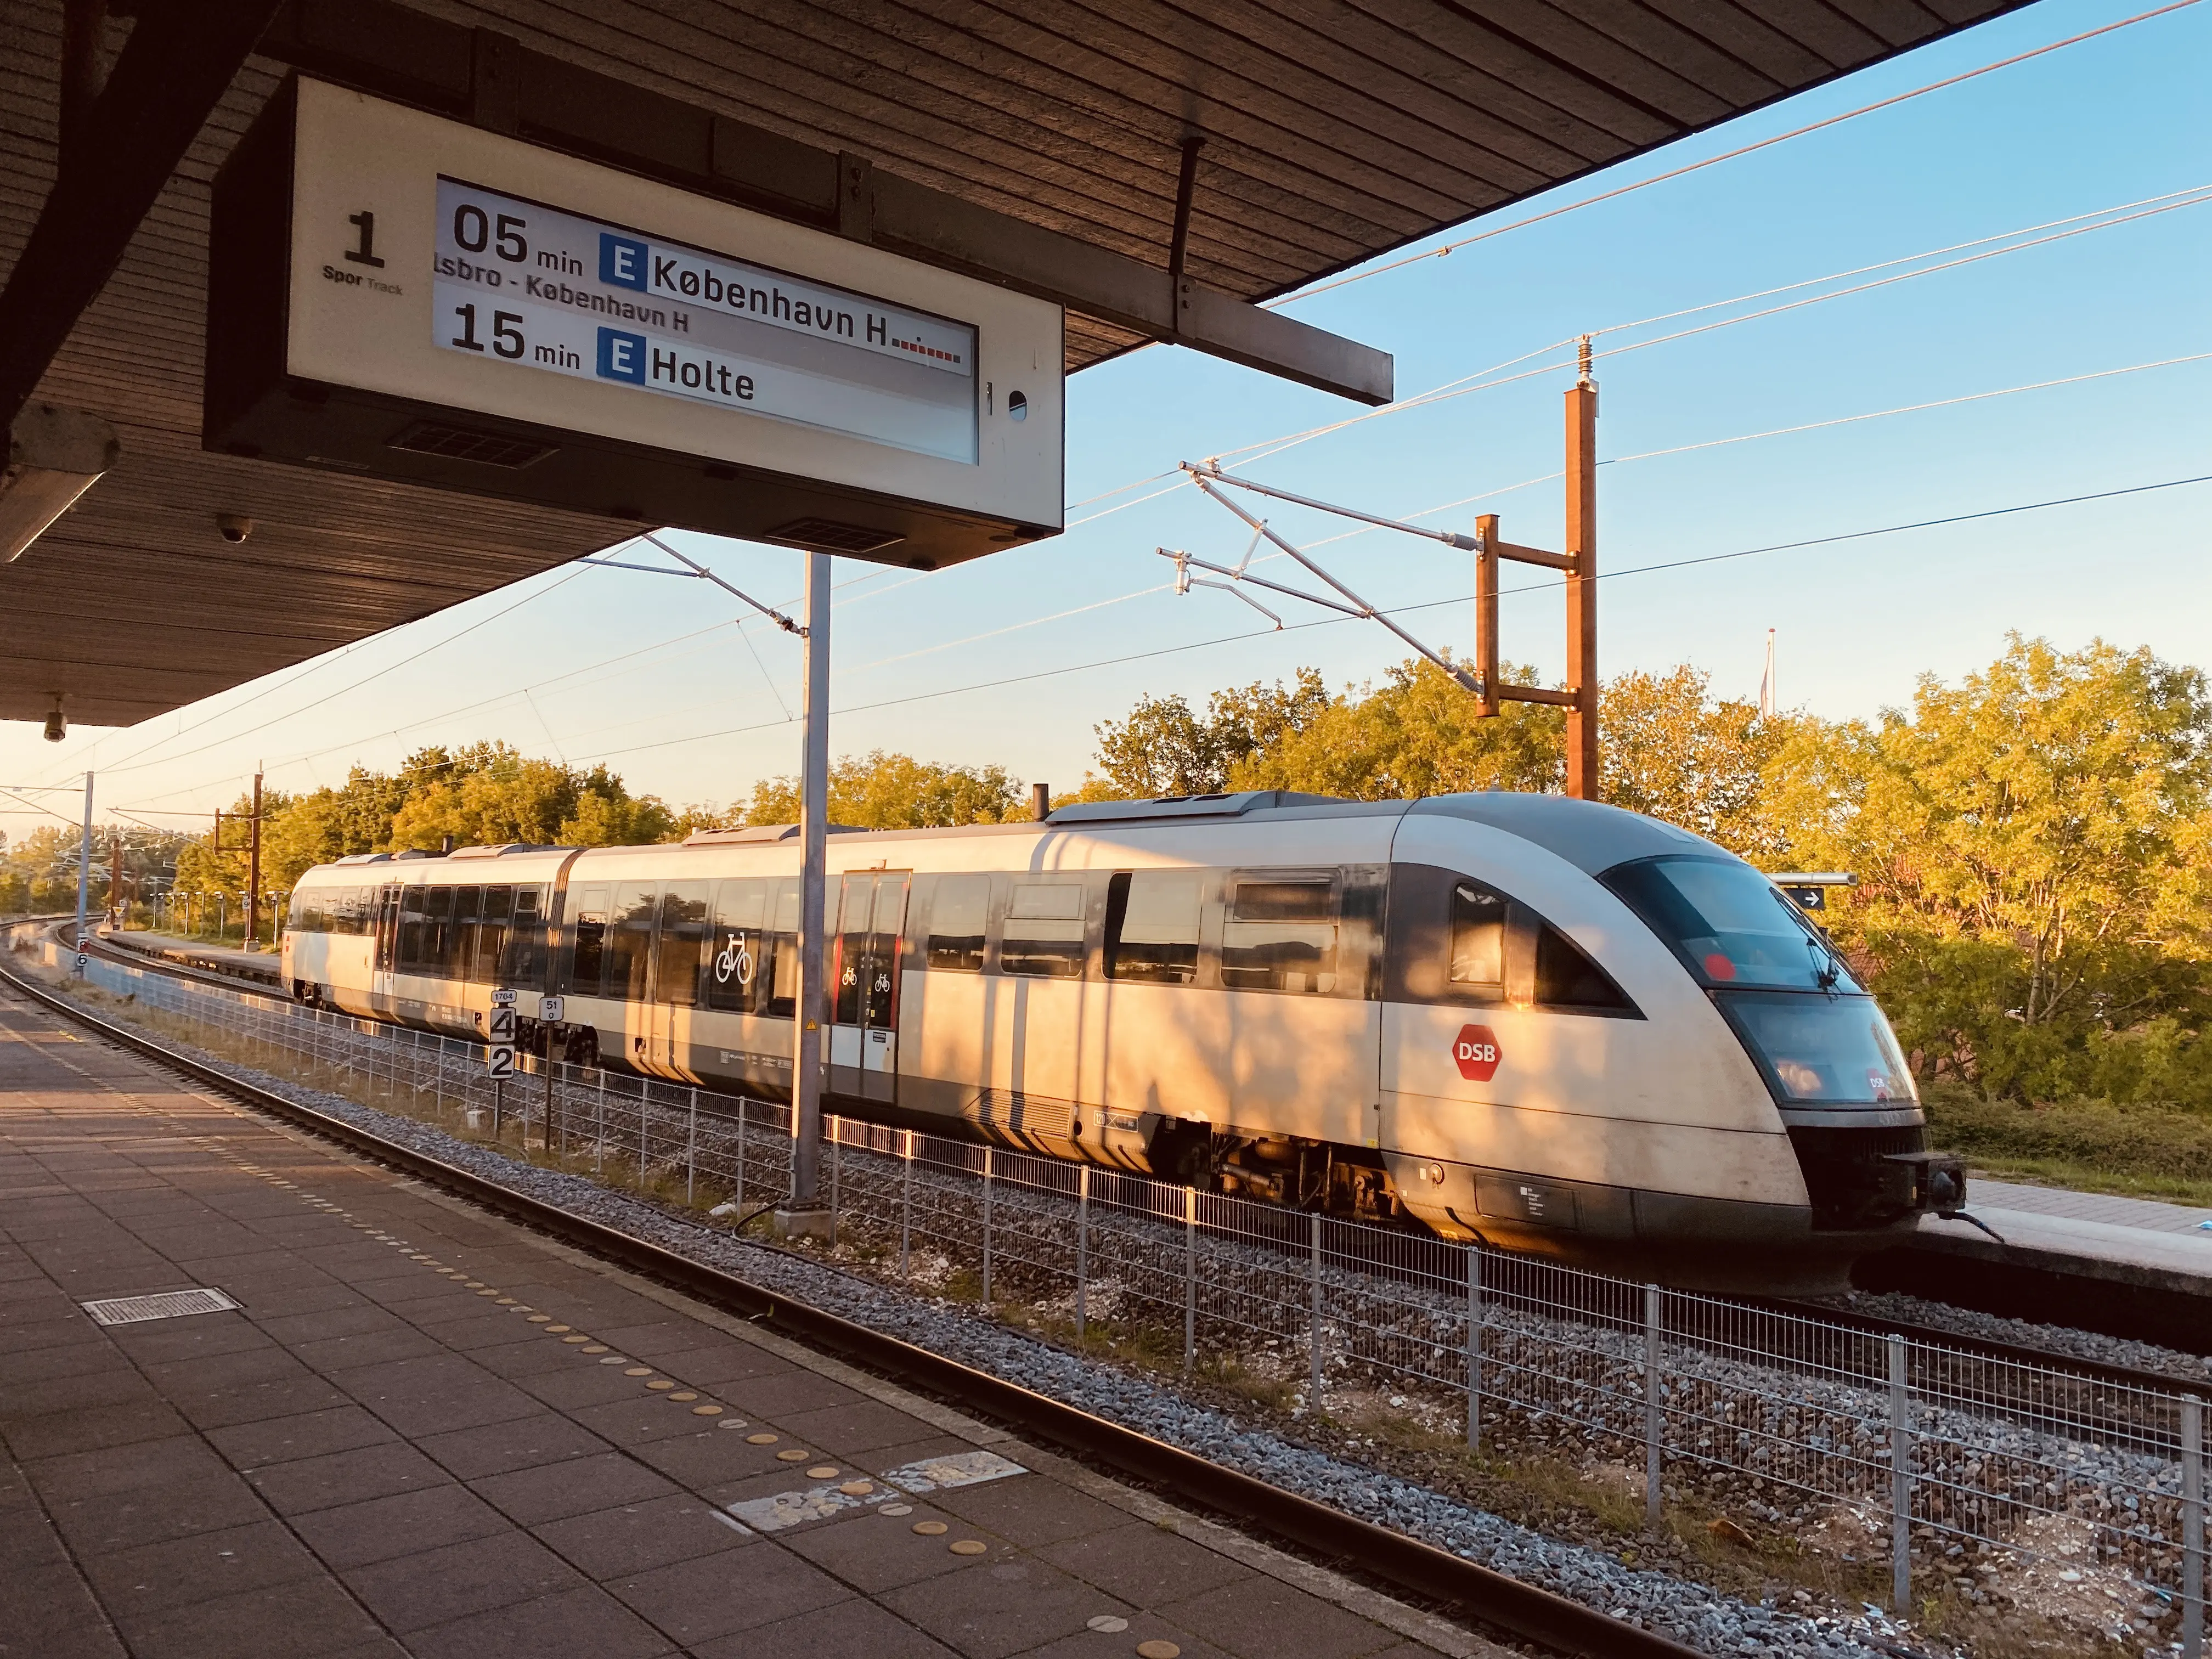 Billede af Ølby Station.